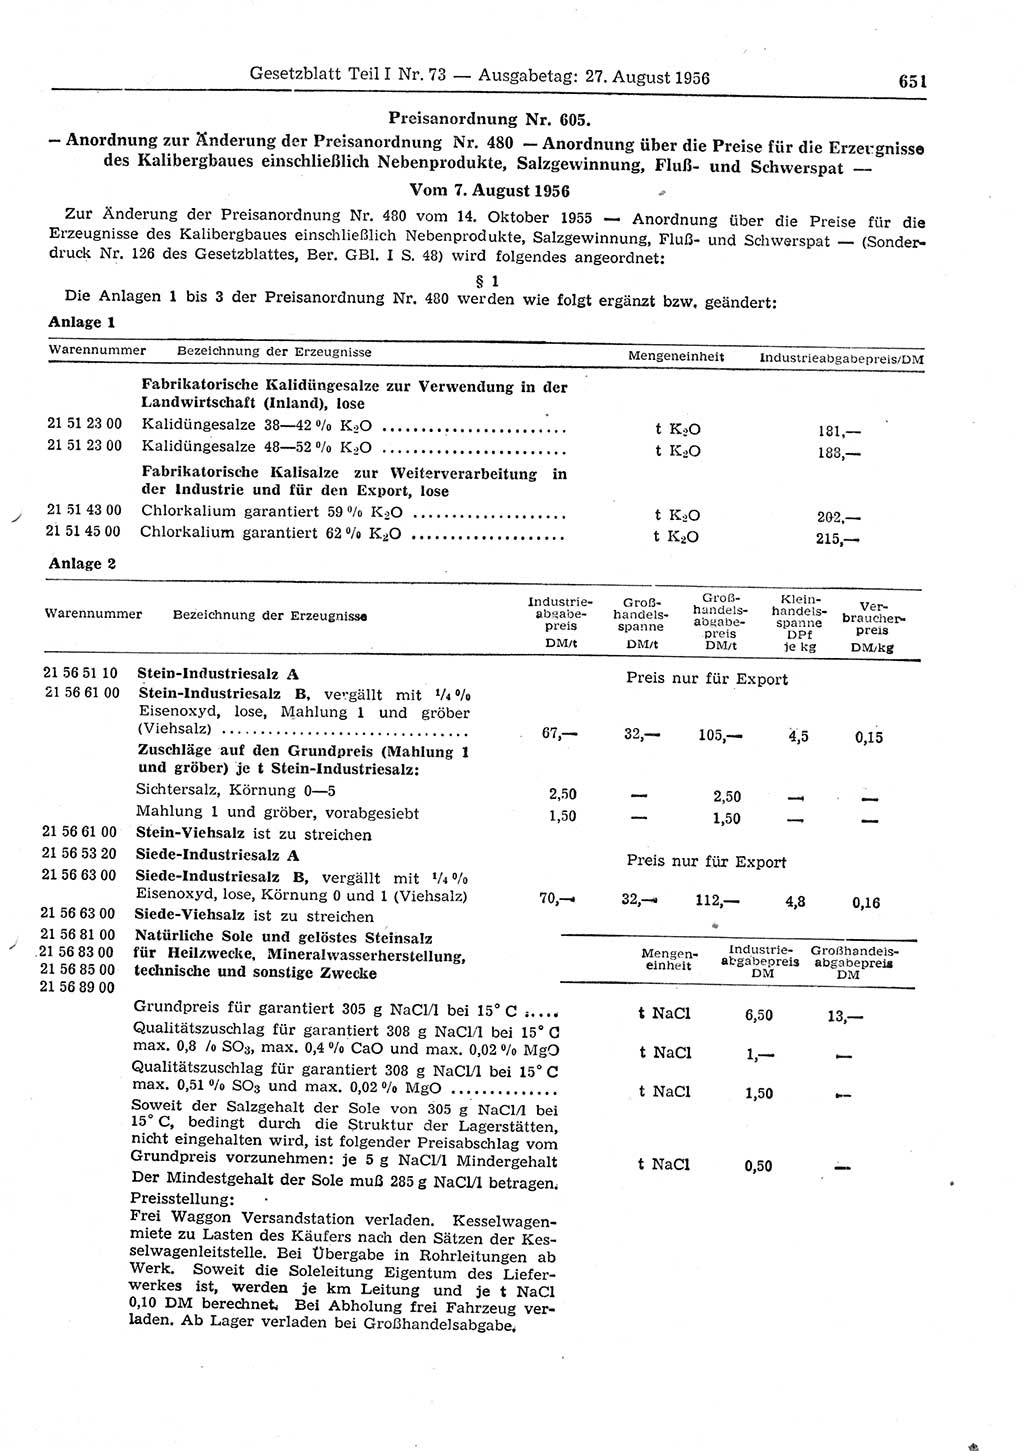 Gesetzblatt (GBl.) der Deutschen Demokratischen Republik (DDR) Teil Ⅰ 1956, Seite 651 (GBl. DDR Ⅰ 1956, S. 651)